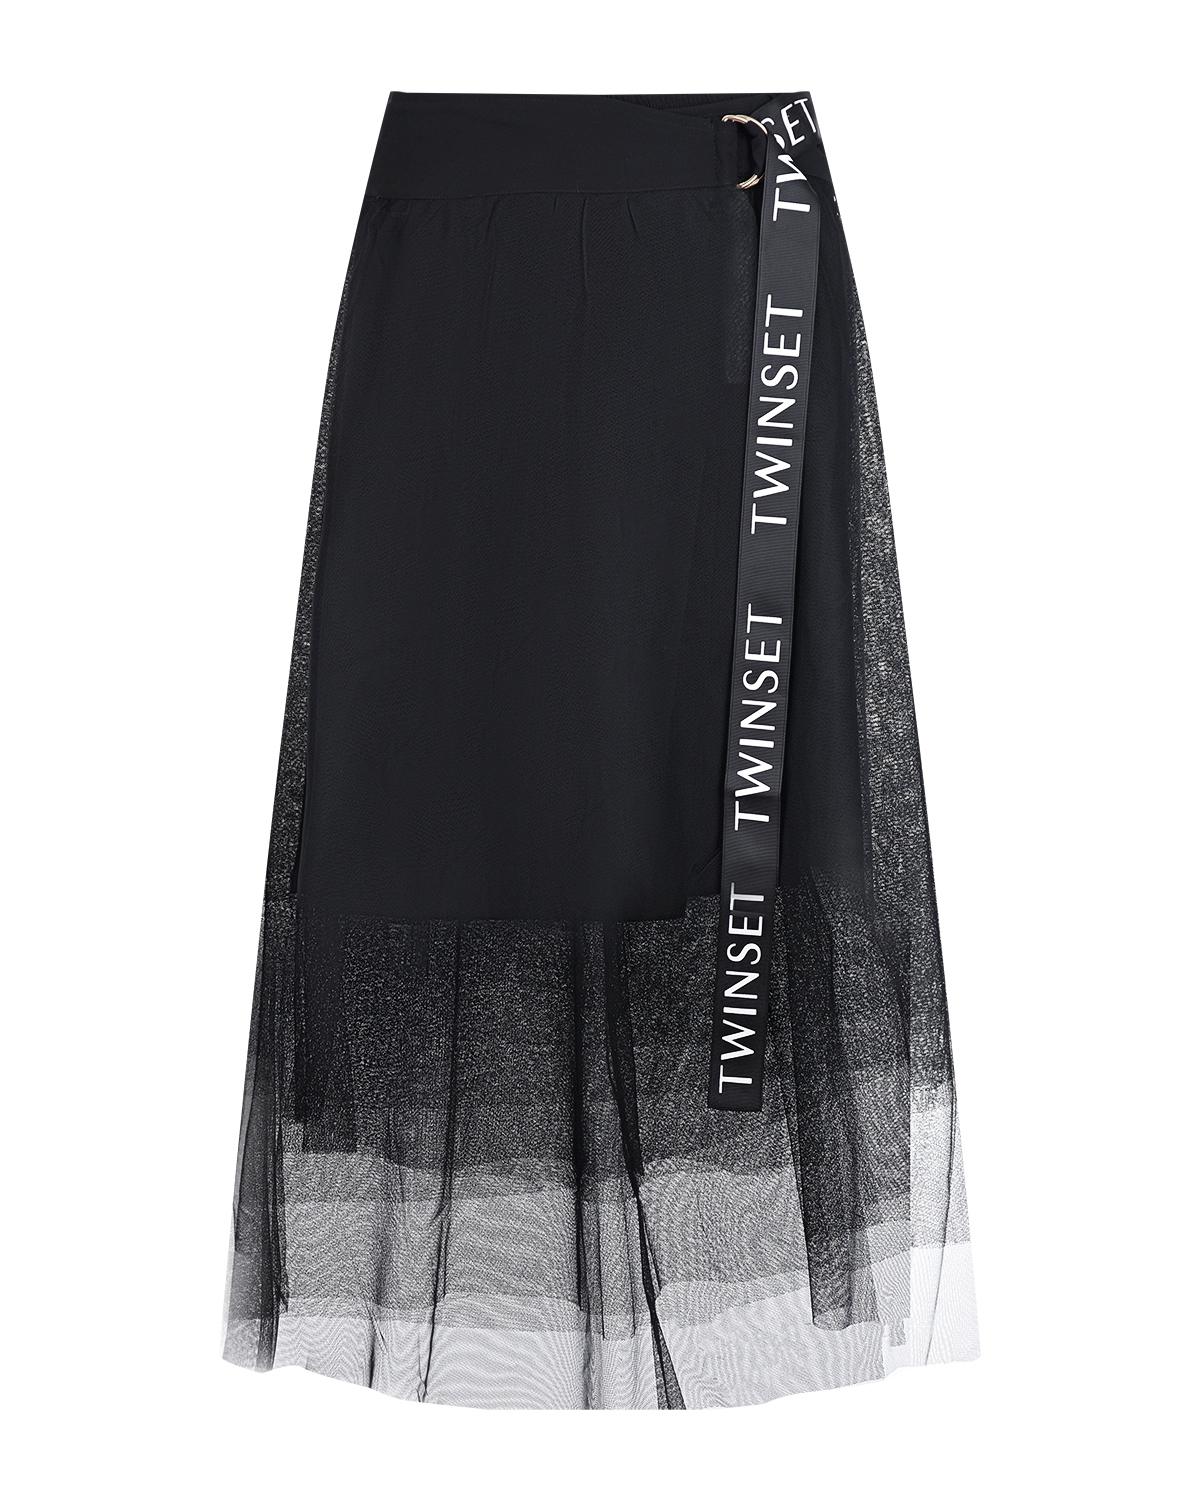 Черная юбка с логотипом на поясе TWINSET, размер 40, цвет черный - фото 1